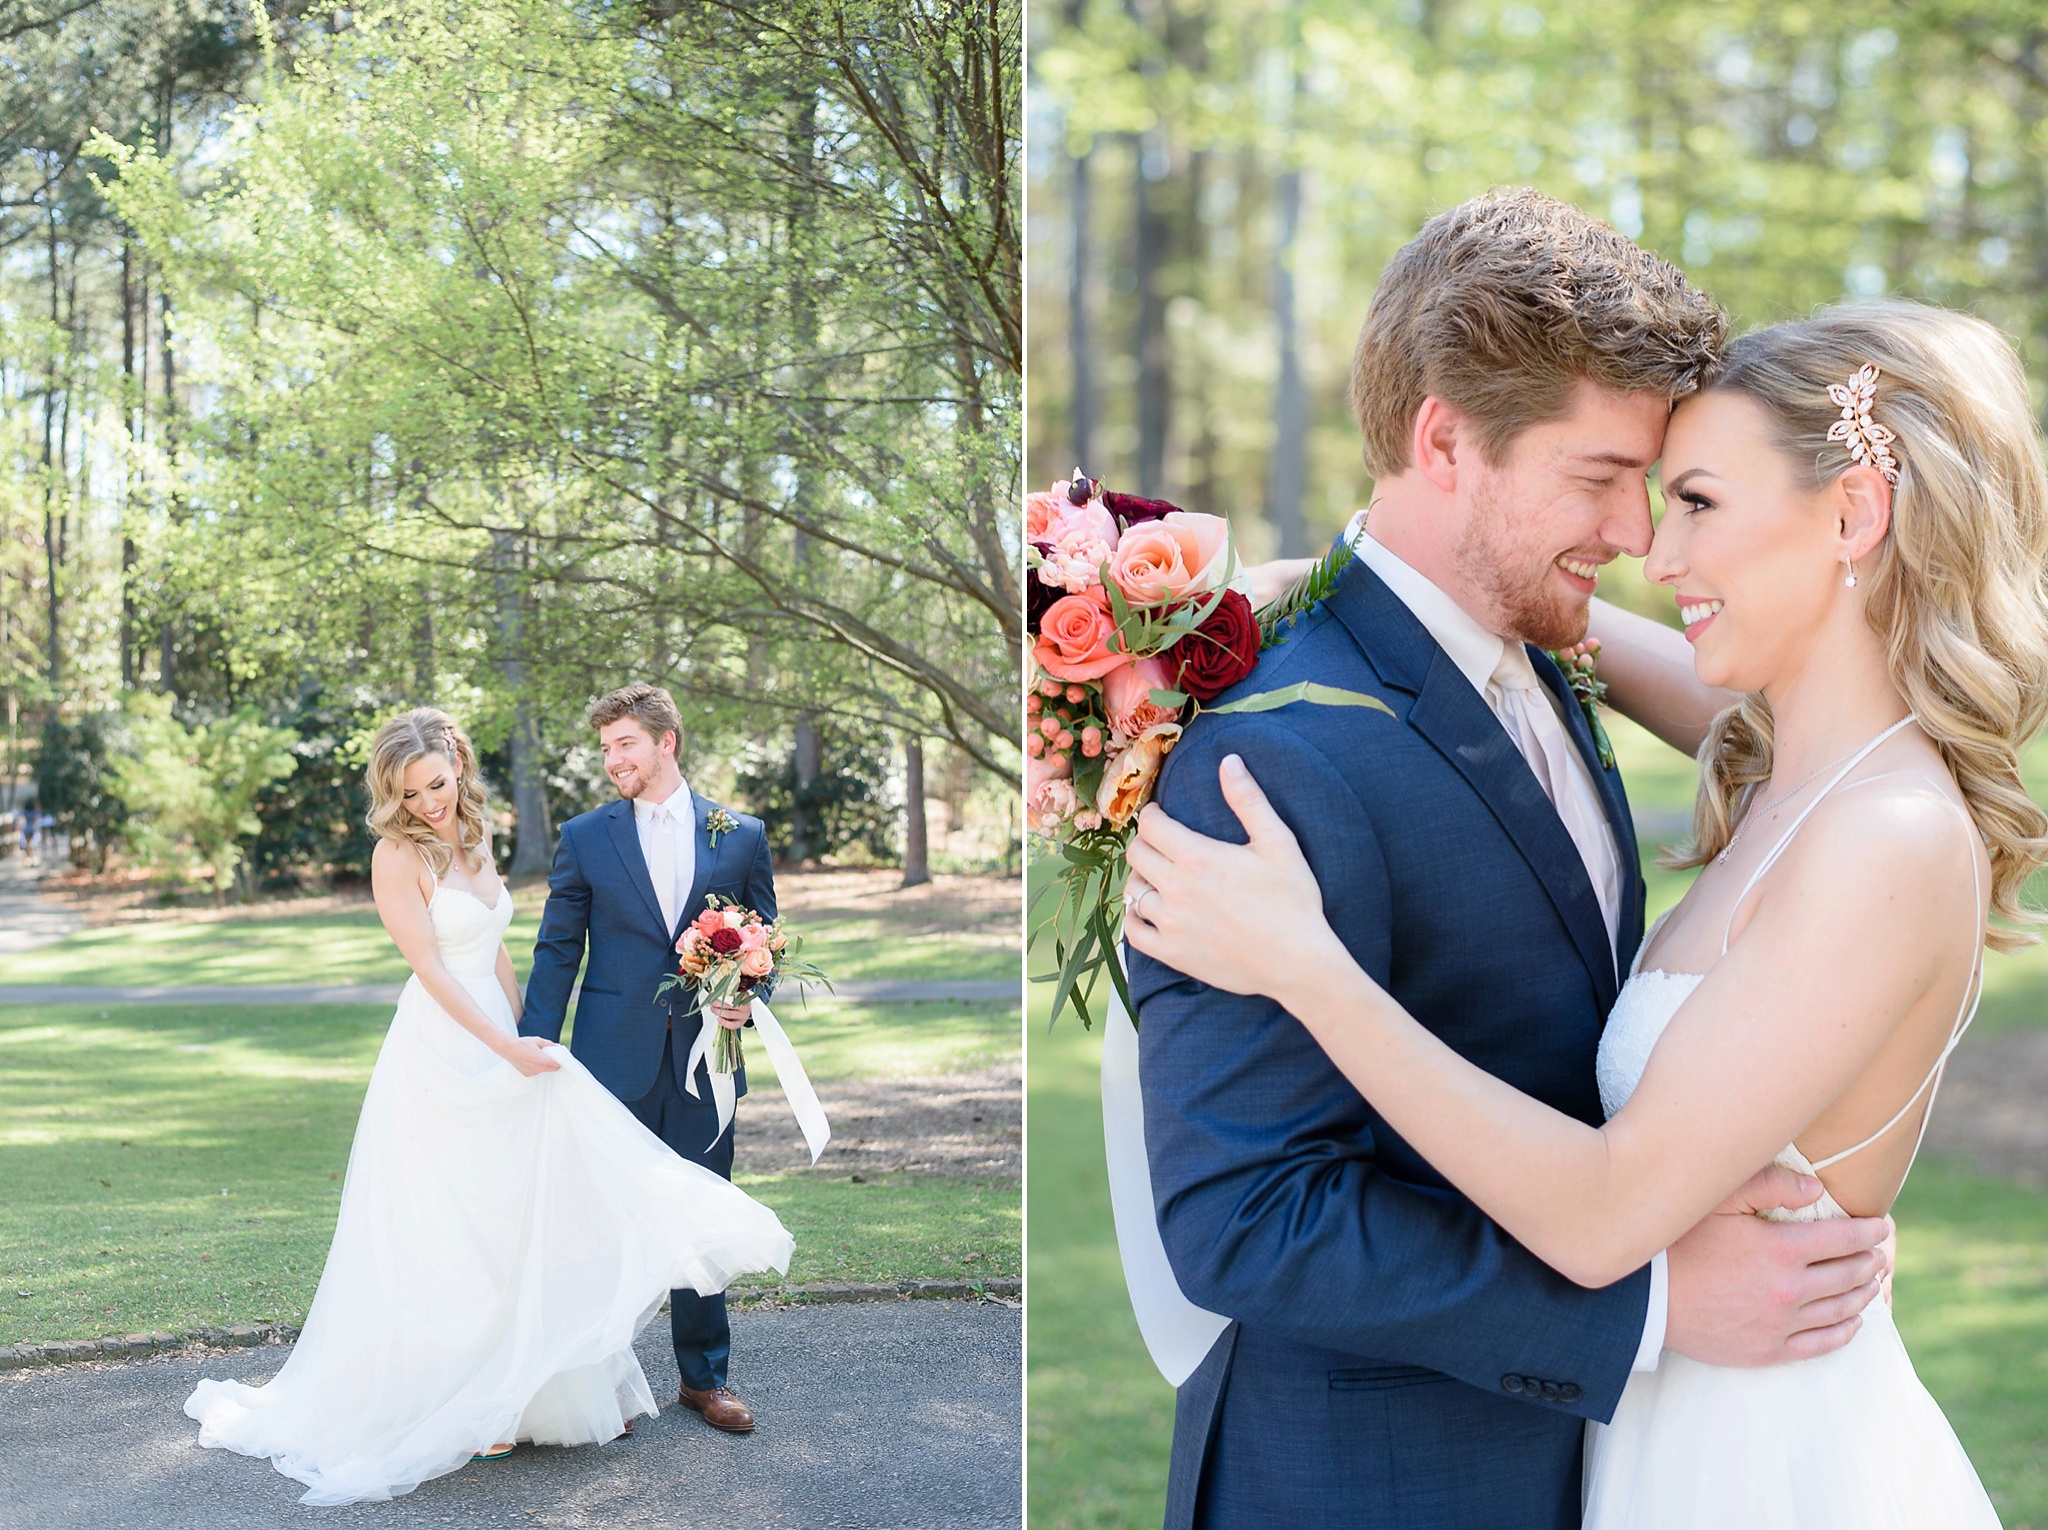 Desiree Hartsock Birmingham Aldridge Gardens Wedding Hoover Alabama | Birmingham Alabama Wedding Photographers_0015.jpg